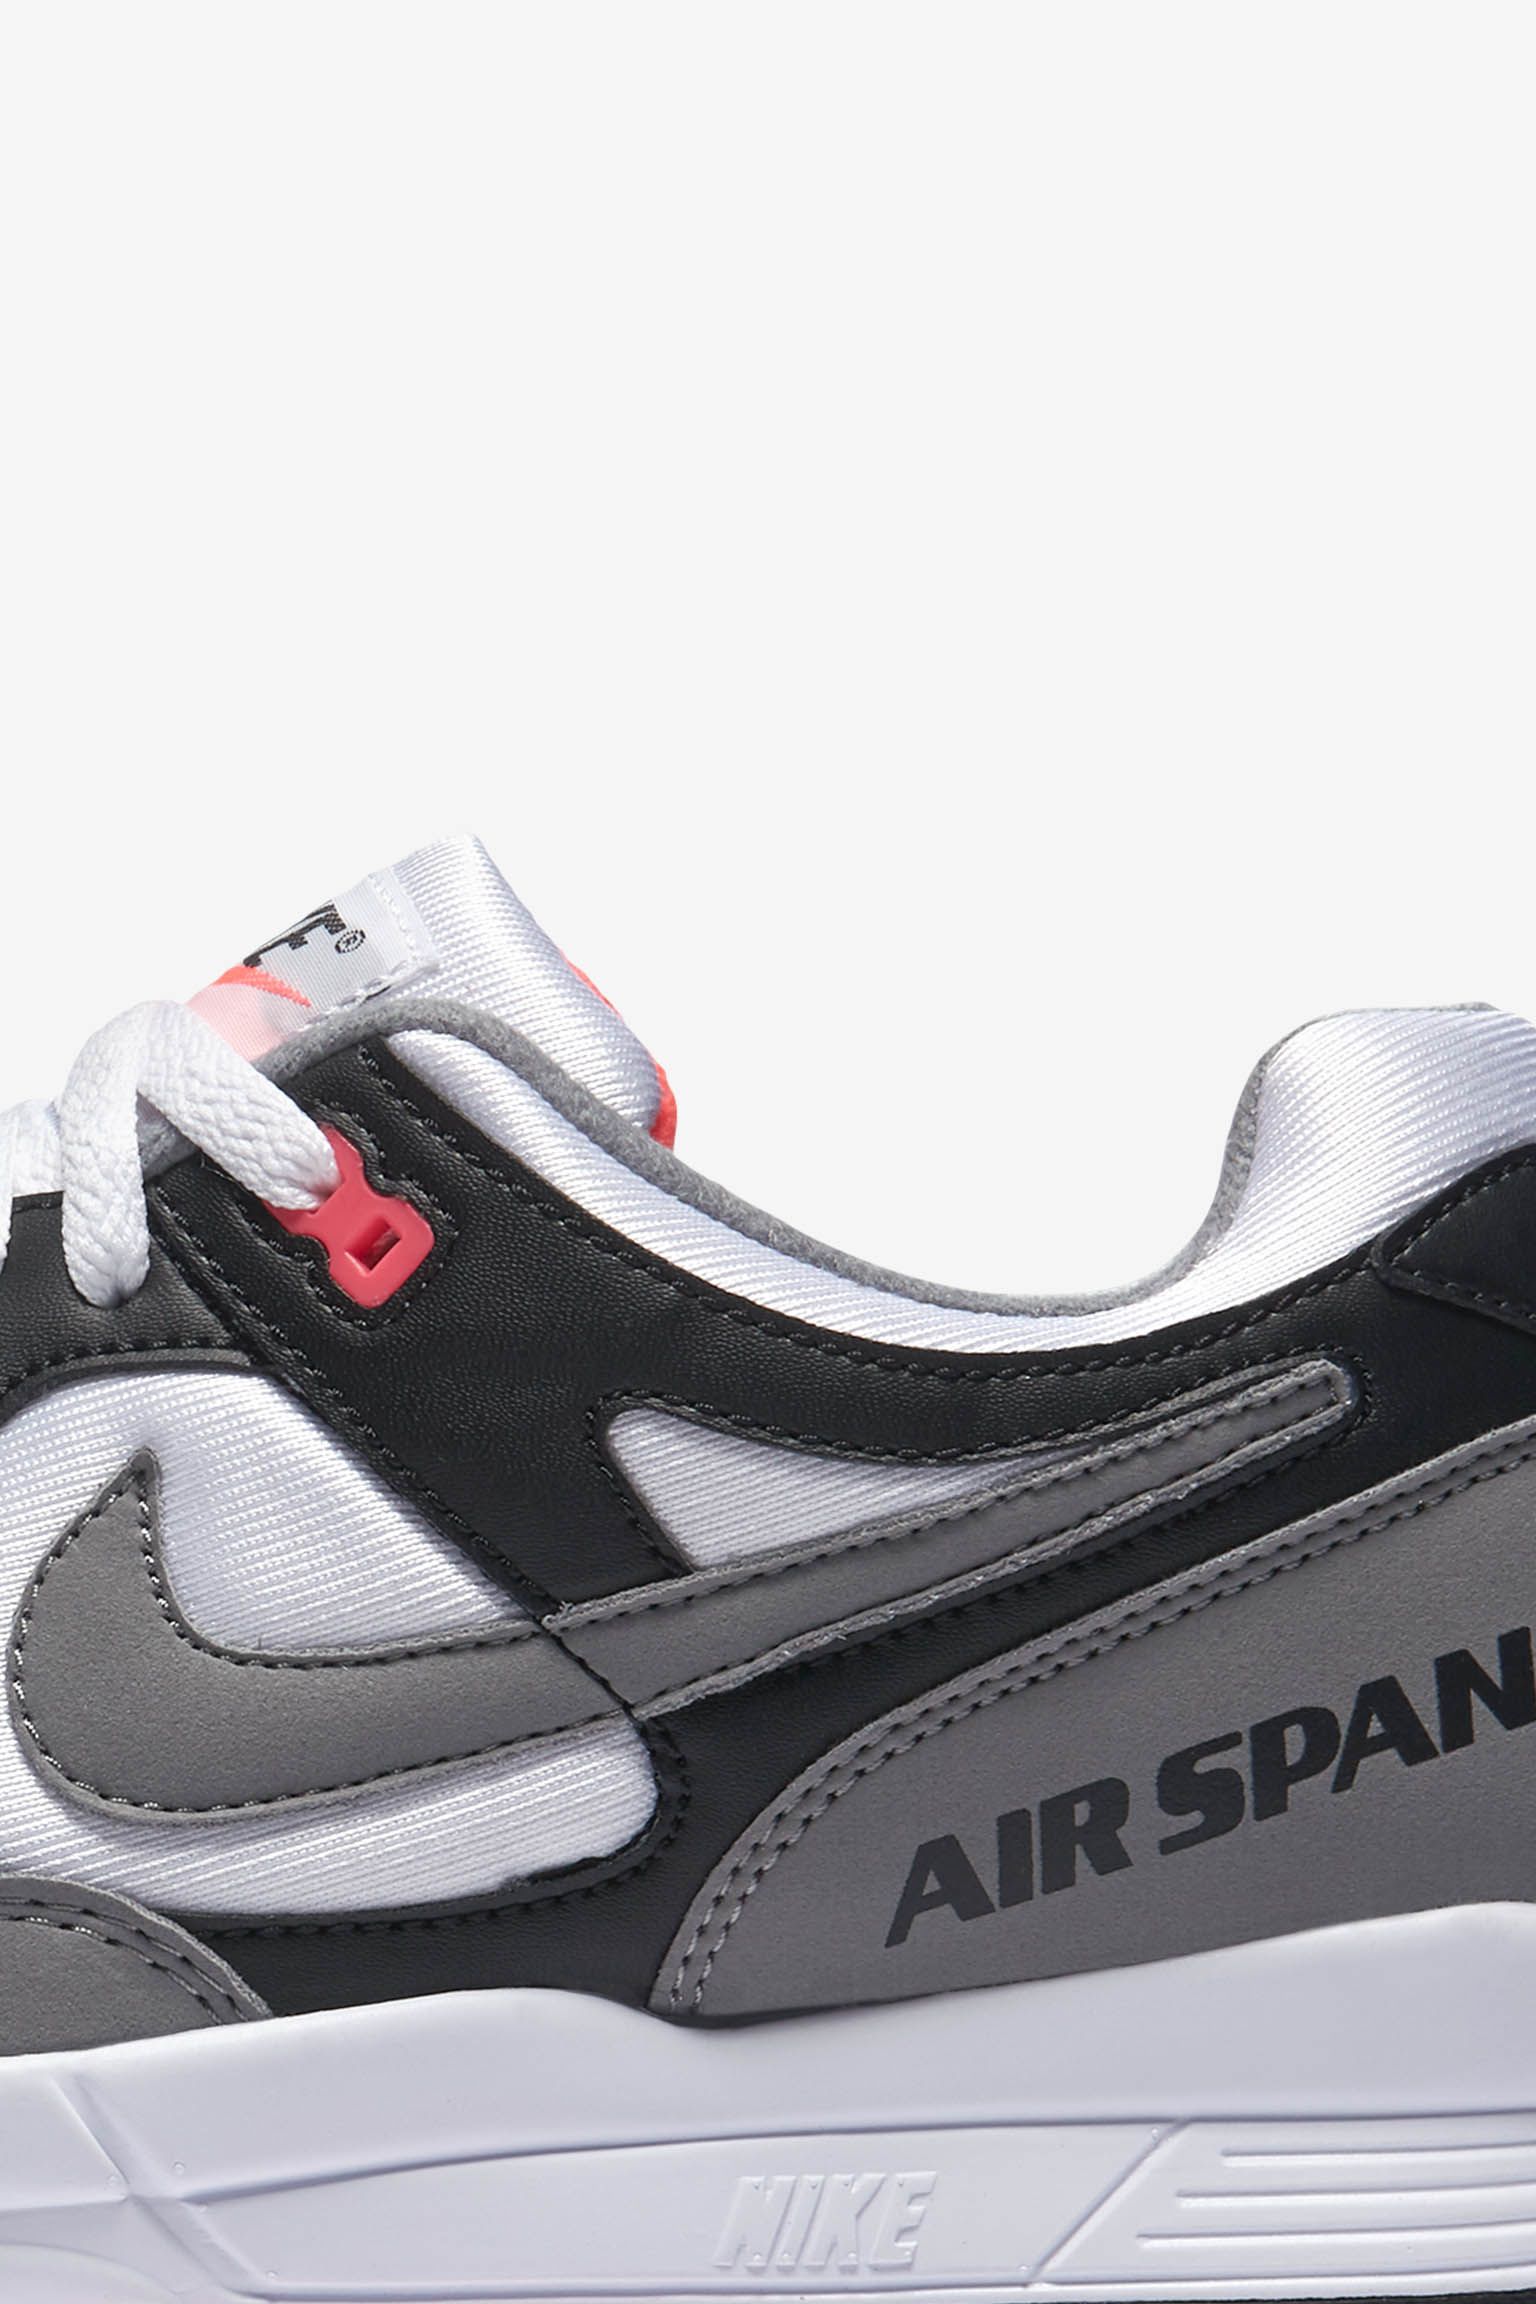 Fecha lanzamiento las Air Span 2 &amp; Dust". Nike SNKRS ES